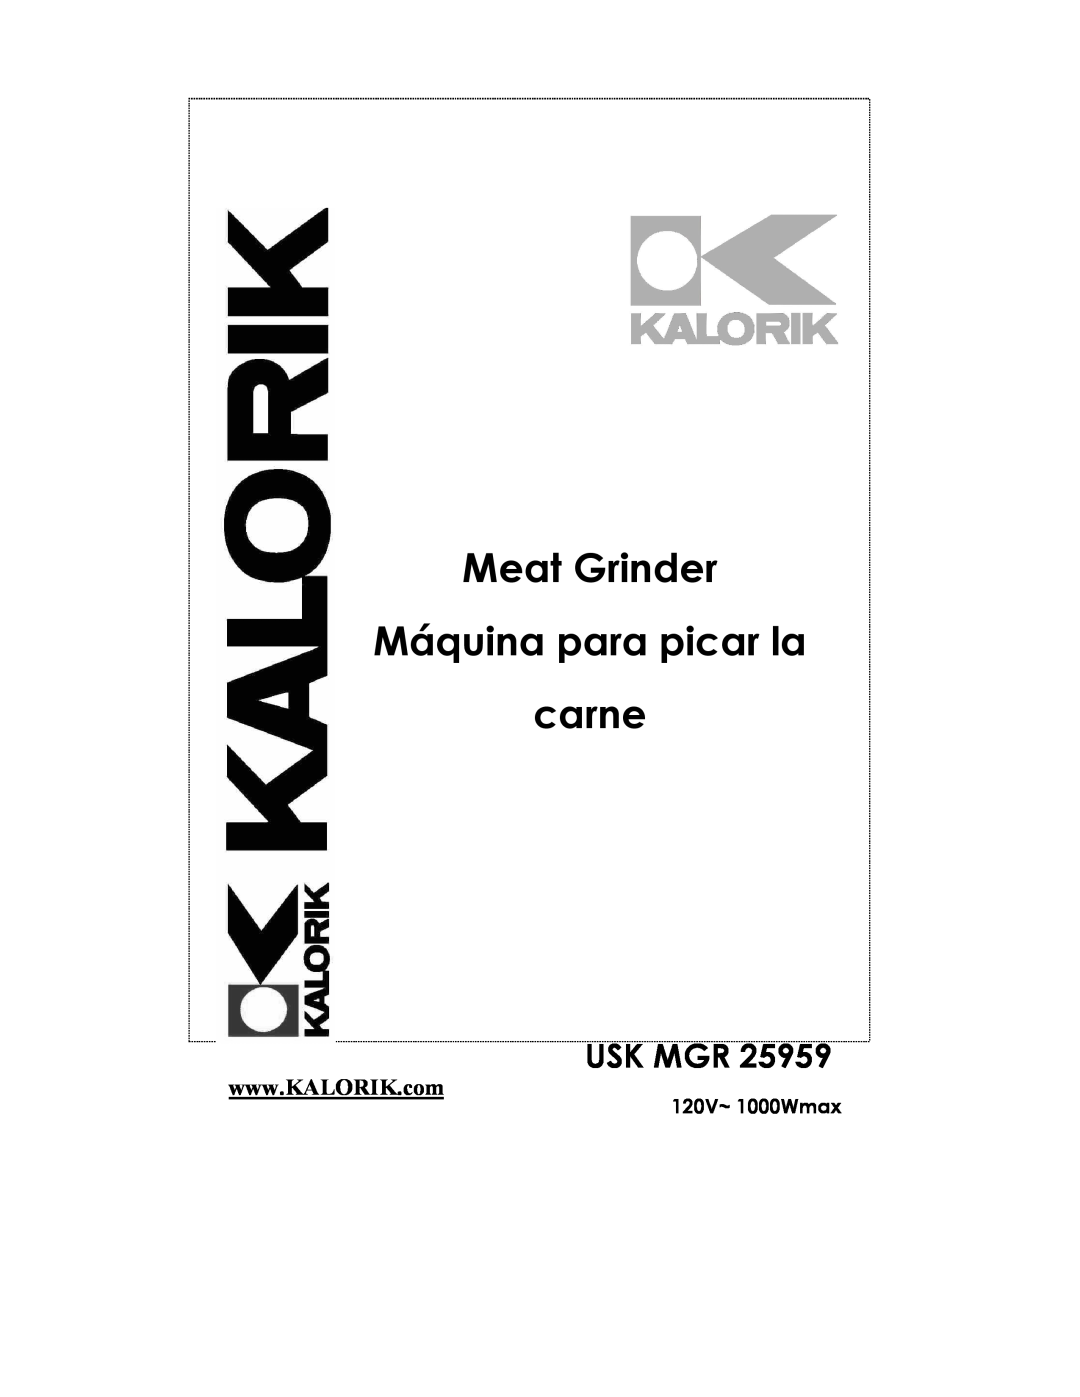 Kalorik USK MGR 25959 manual Meat Grinder Máquina para picar la carne, 120V~ 1000Wmax, Usk Mgr 